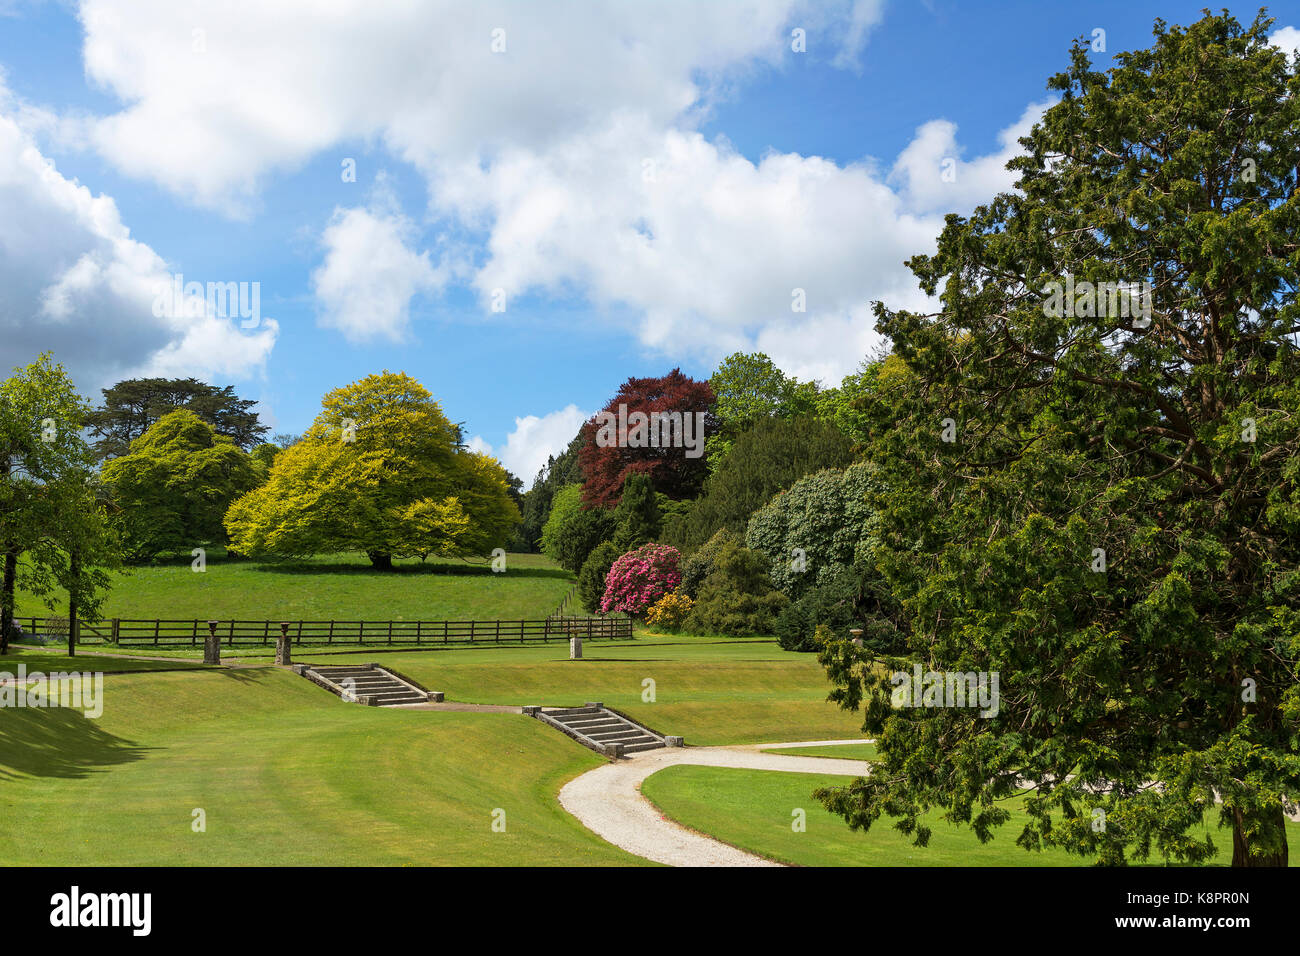 Ein klassisches Land garten landschaft Zum vielfältigen Angebot an touristischen Haus in der Nähe von Bodmin, Cornwall, England, Großbritannien. Stockfoto